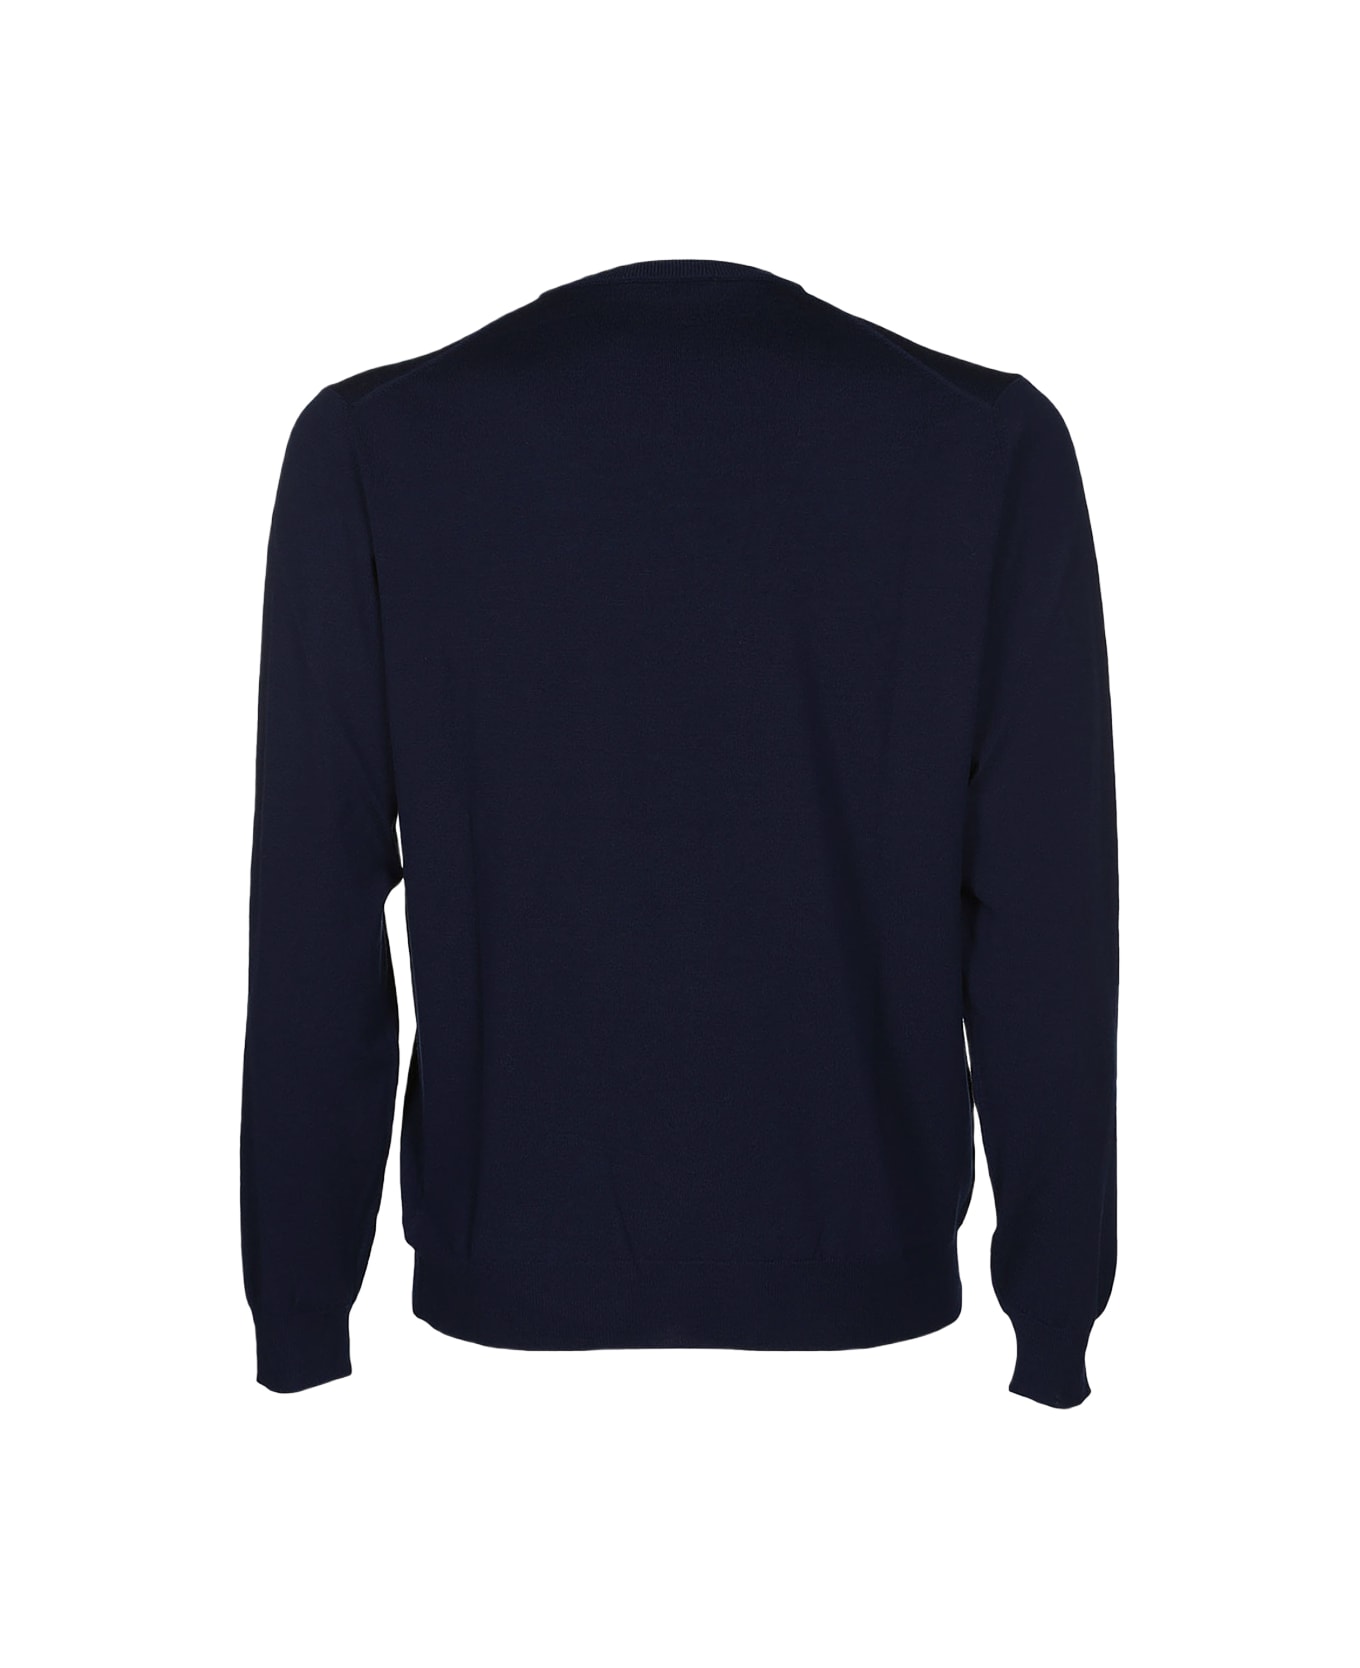 Zanone Blue Virgin Wool Sweater - Blue